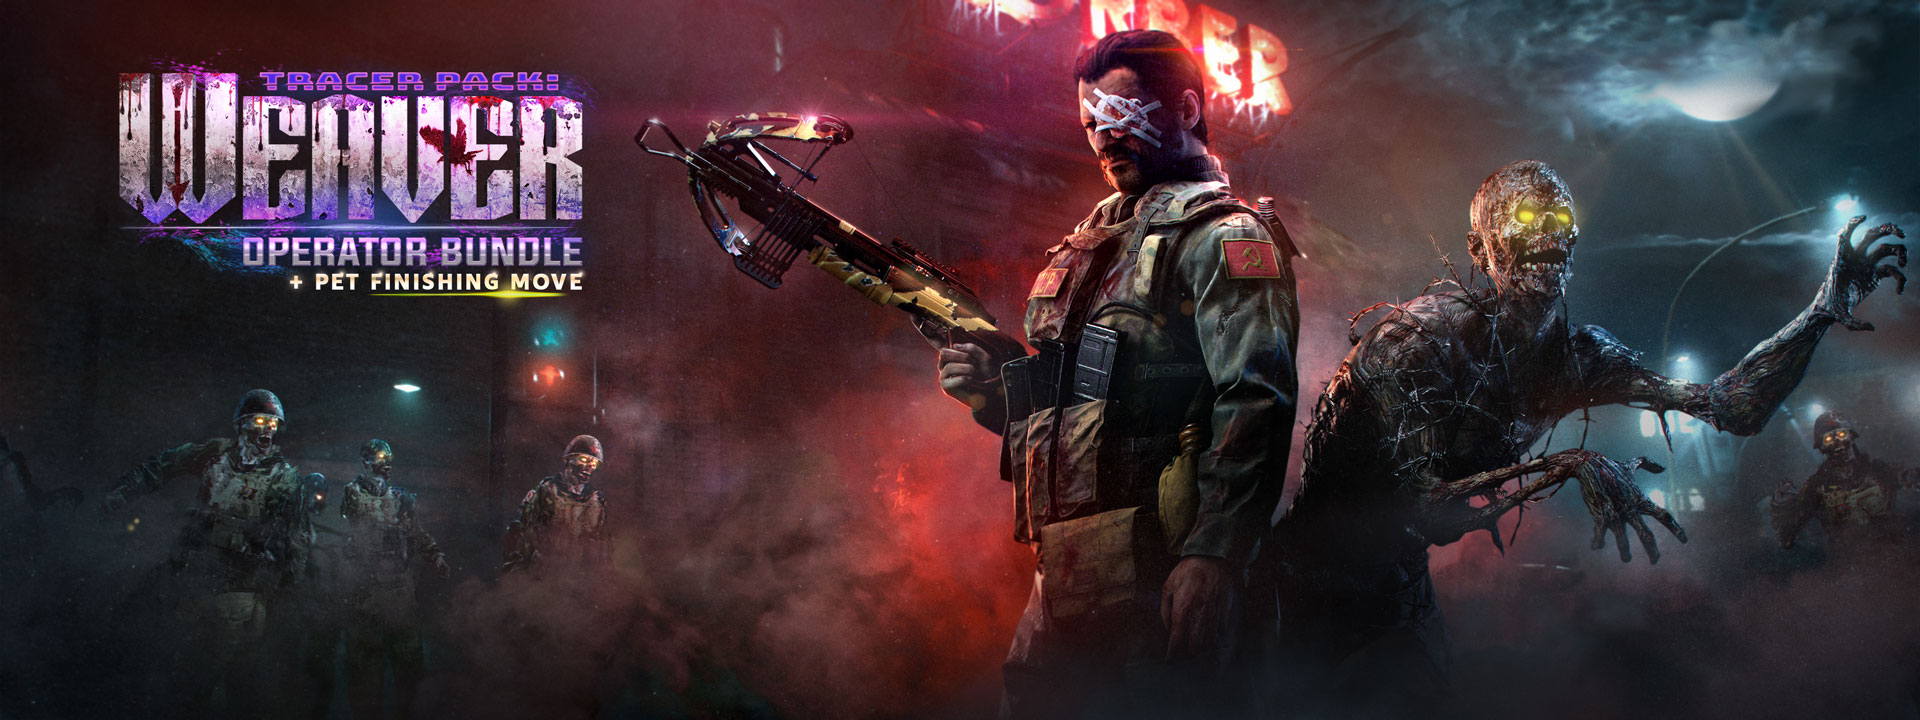 Call of Duty: Black Ops - Cold War (Multi) ganha trailer do modo  multiplayer; confira os detalhes - GameBlast